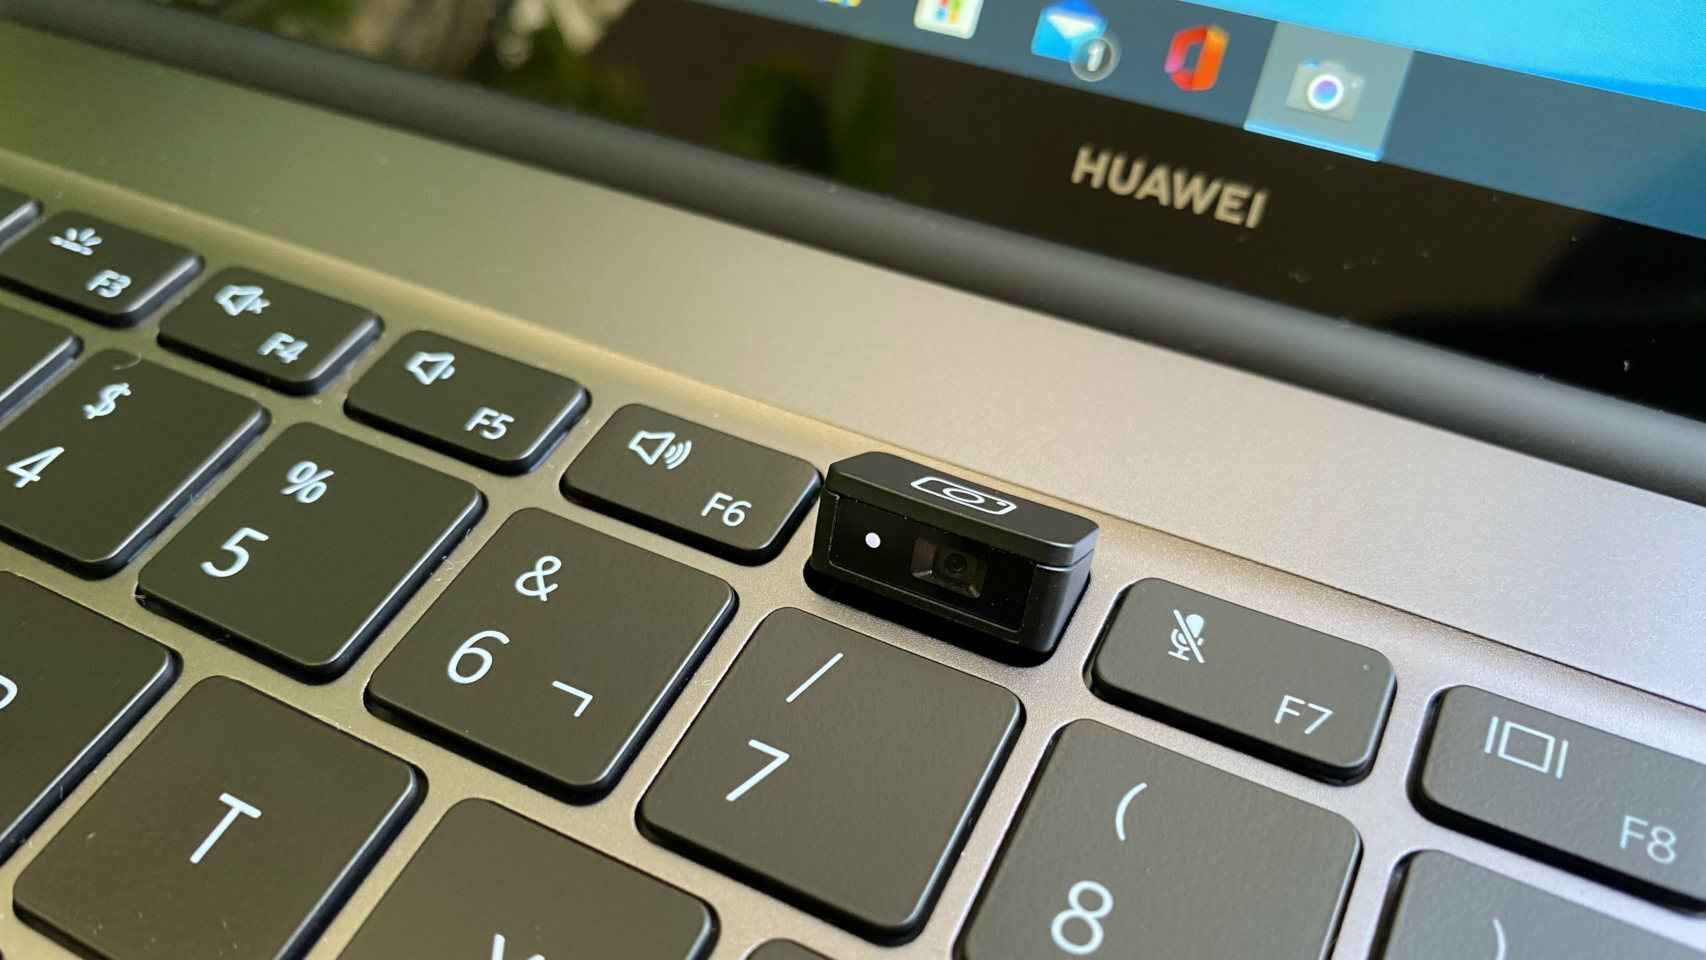 La ya famosa webcam del Huawei MateBook, oculta en el teclado